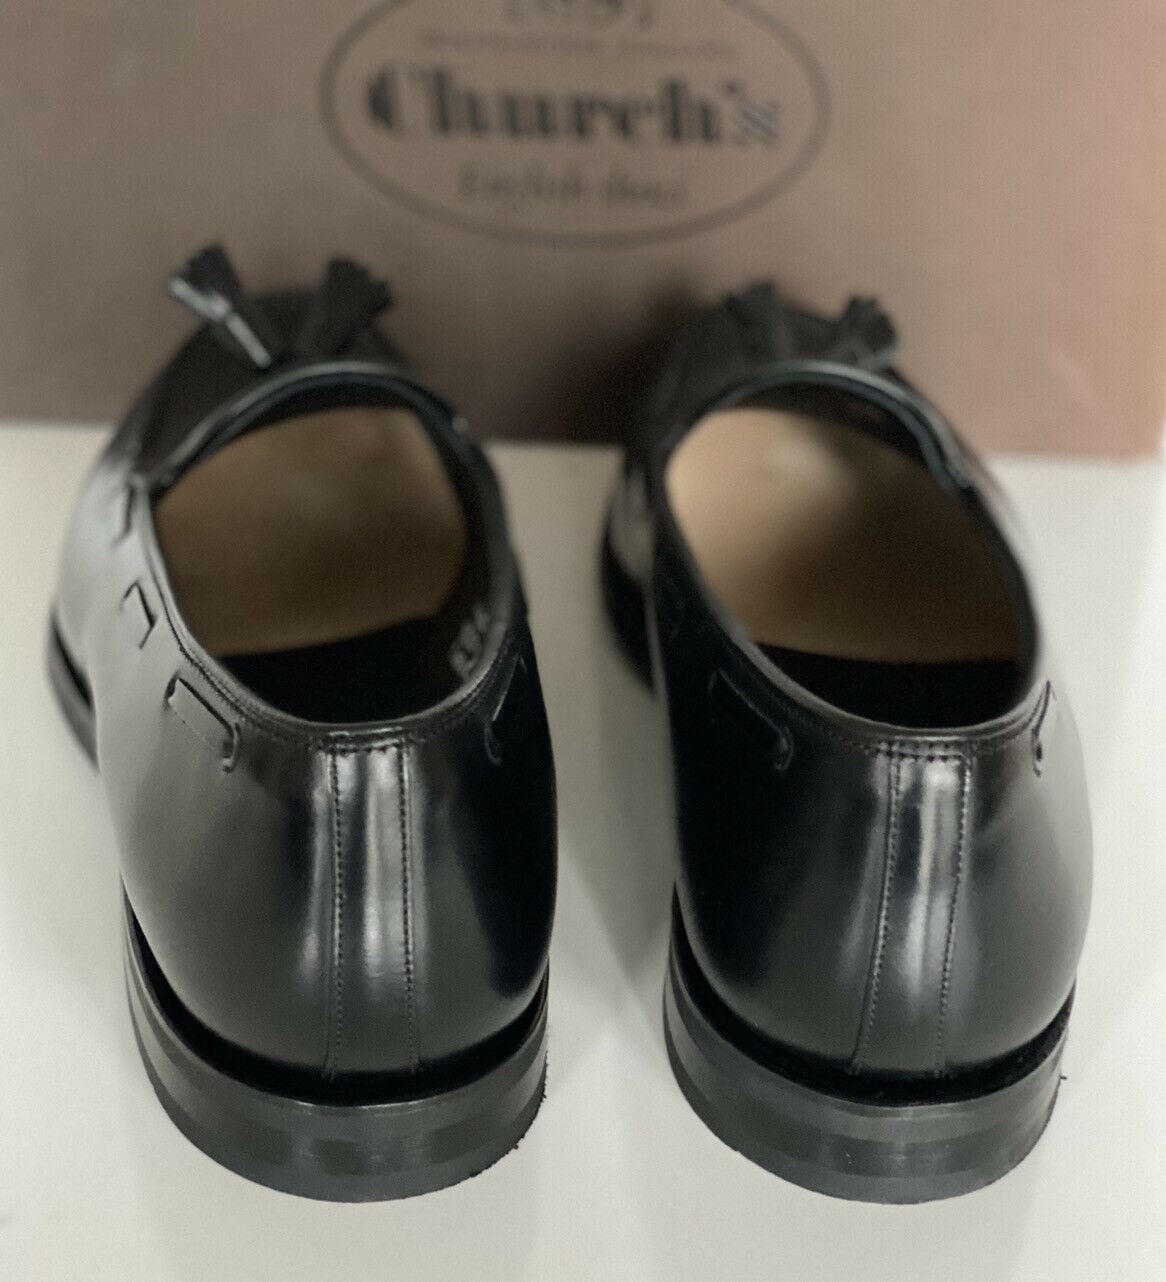 NIB Church's schwarze polnische Binder-Leder-Chicane-Schuhe für Herren, 11 US EDC040 UK 